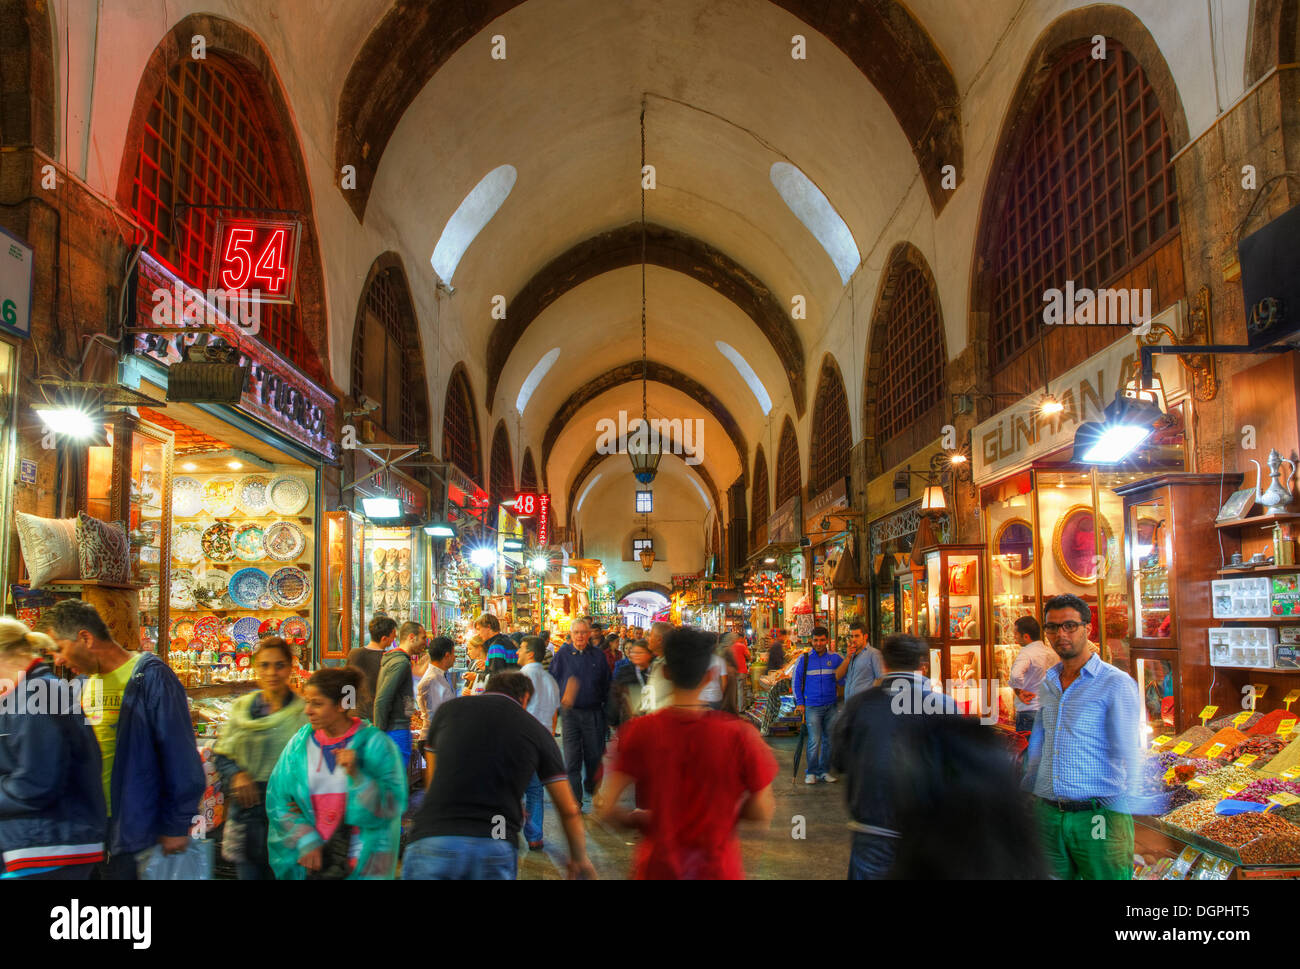 Ägyptische Basar oder Spice Bazaar Mısır Çarşısı, Eminönü, Istanbul, europäische Seite, Provinz Istanbul, Türkei Stockfoto